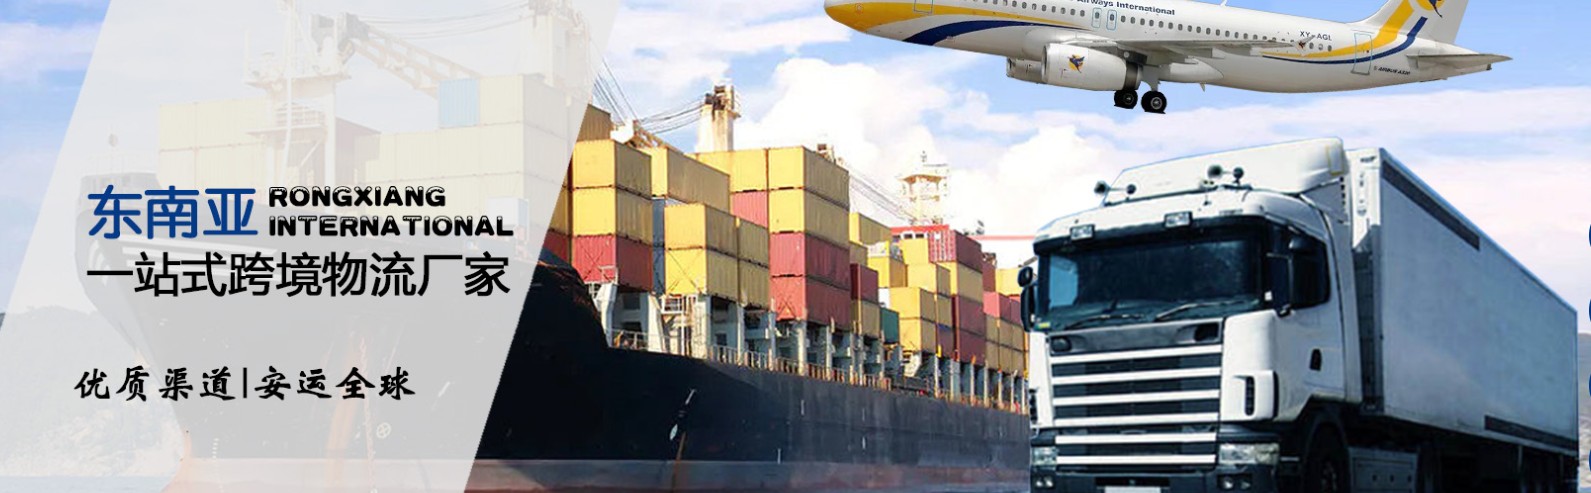 马来西亚货货运代理 马来西亚国际物流公司  马来西亚进出口报关公司 马来西亚国际货运代理有限公司